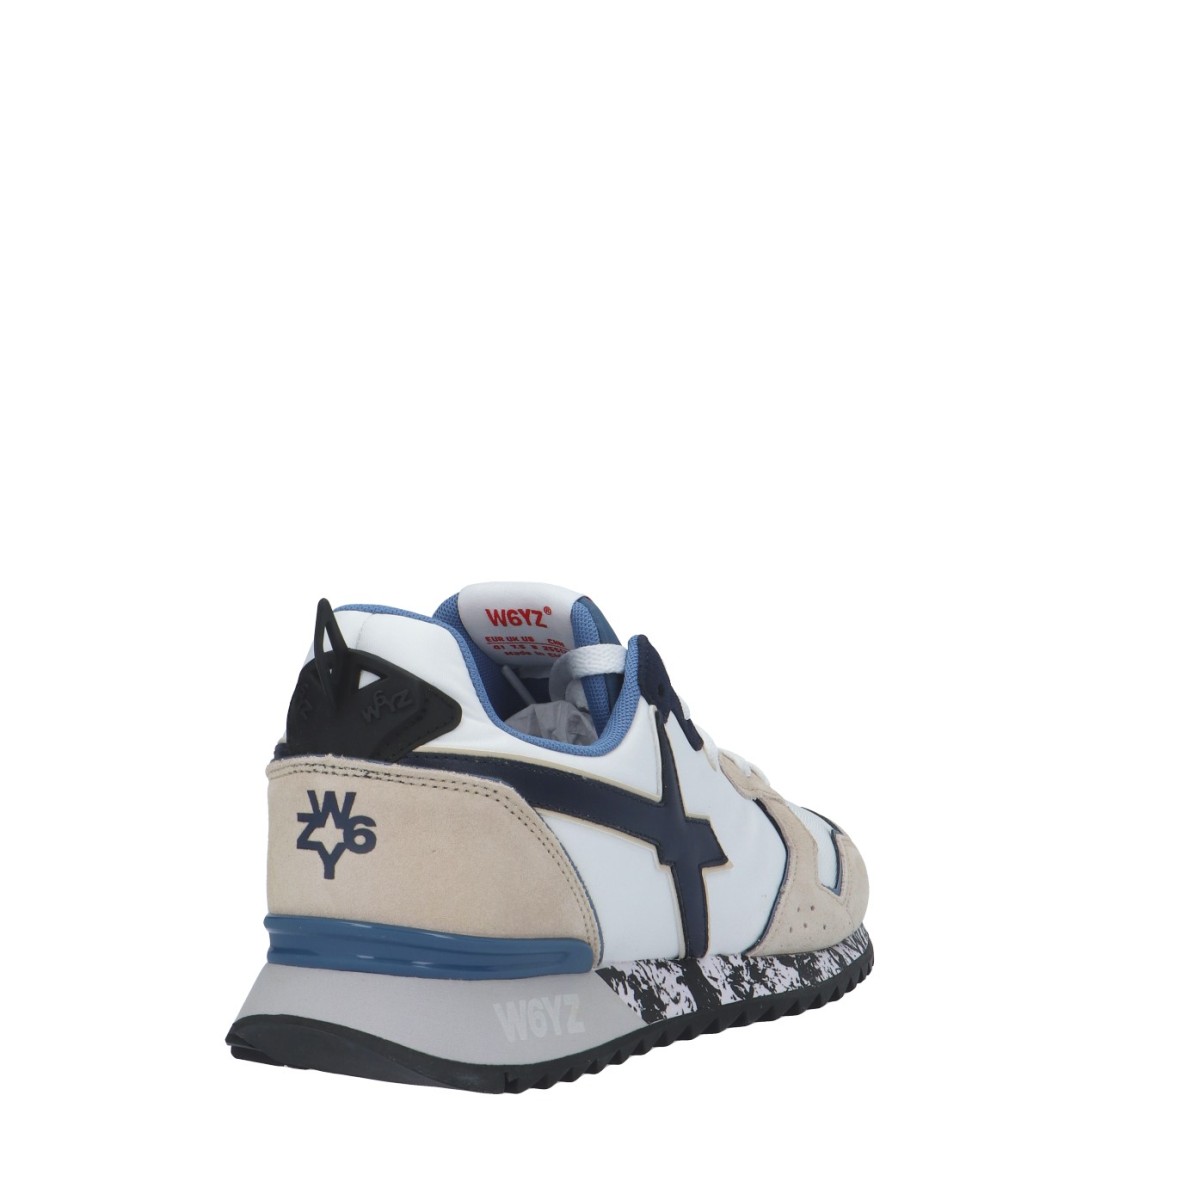 W6yz Sneaker Crema/bianco Gomma JET